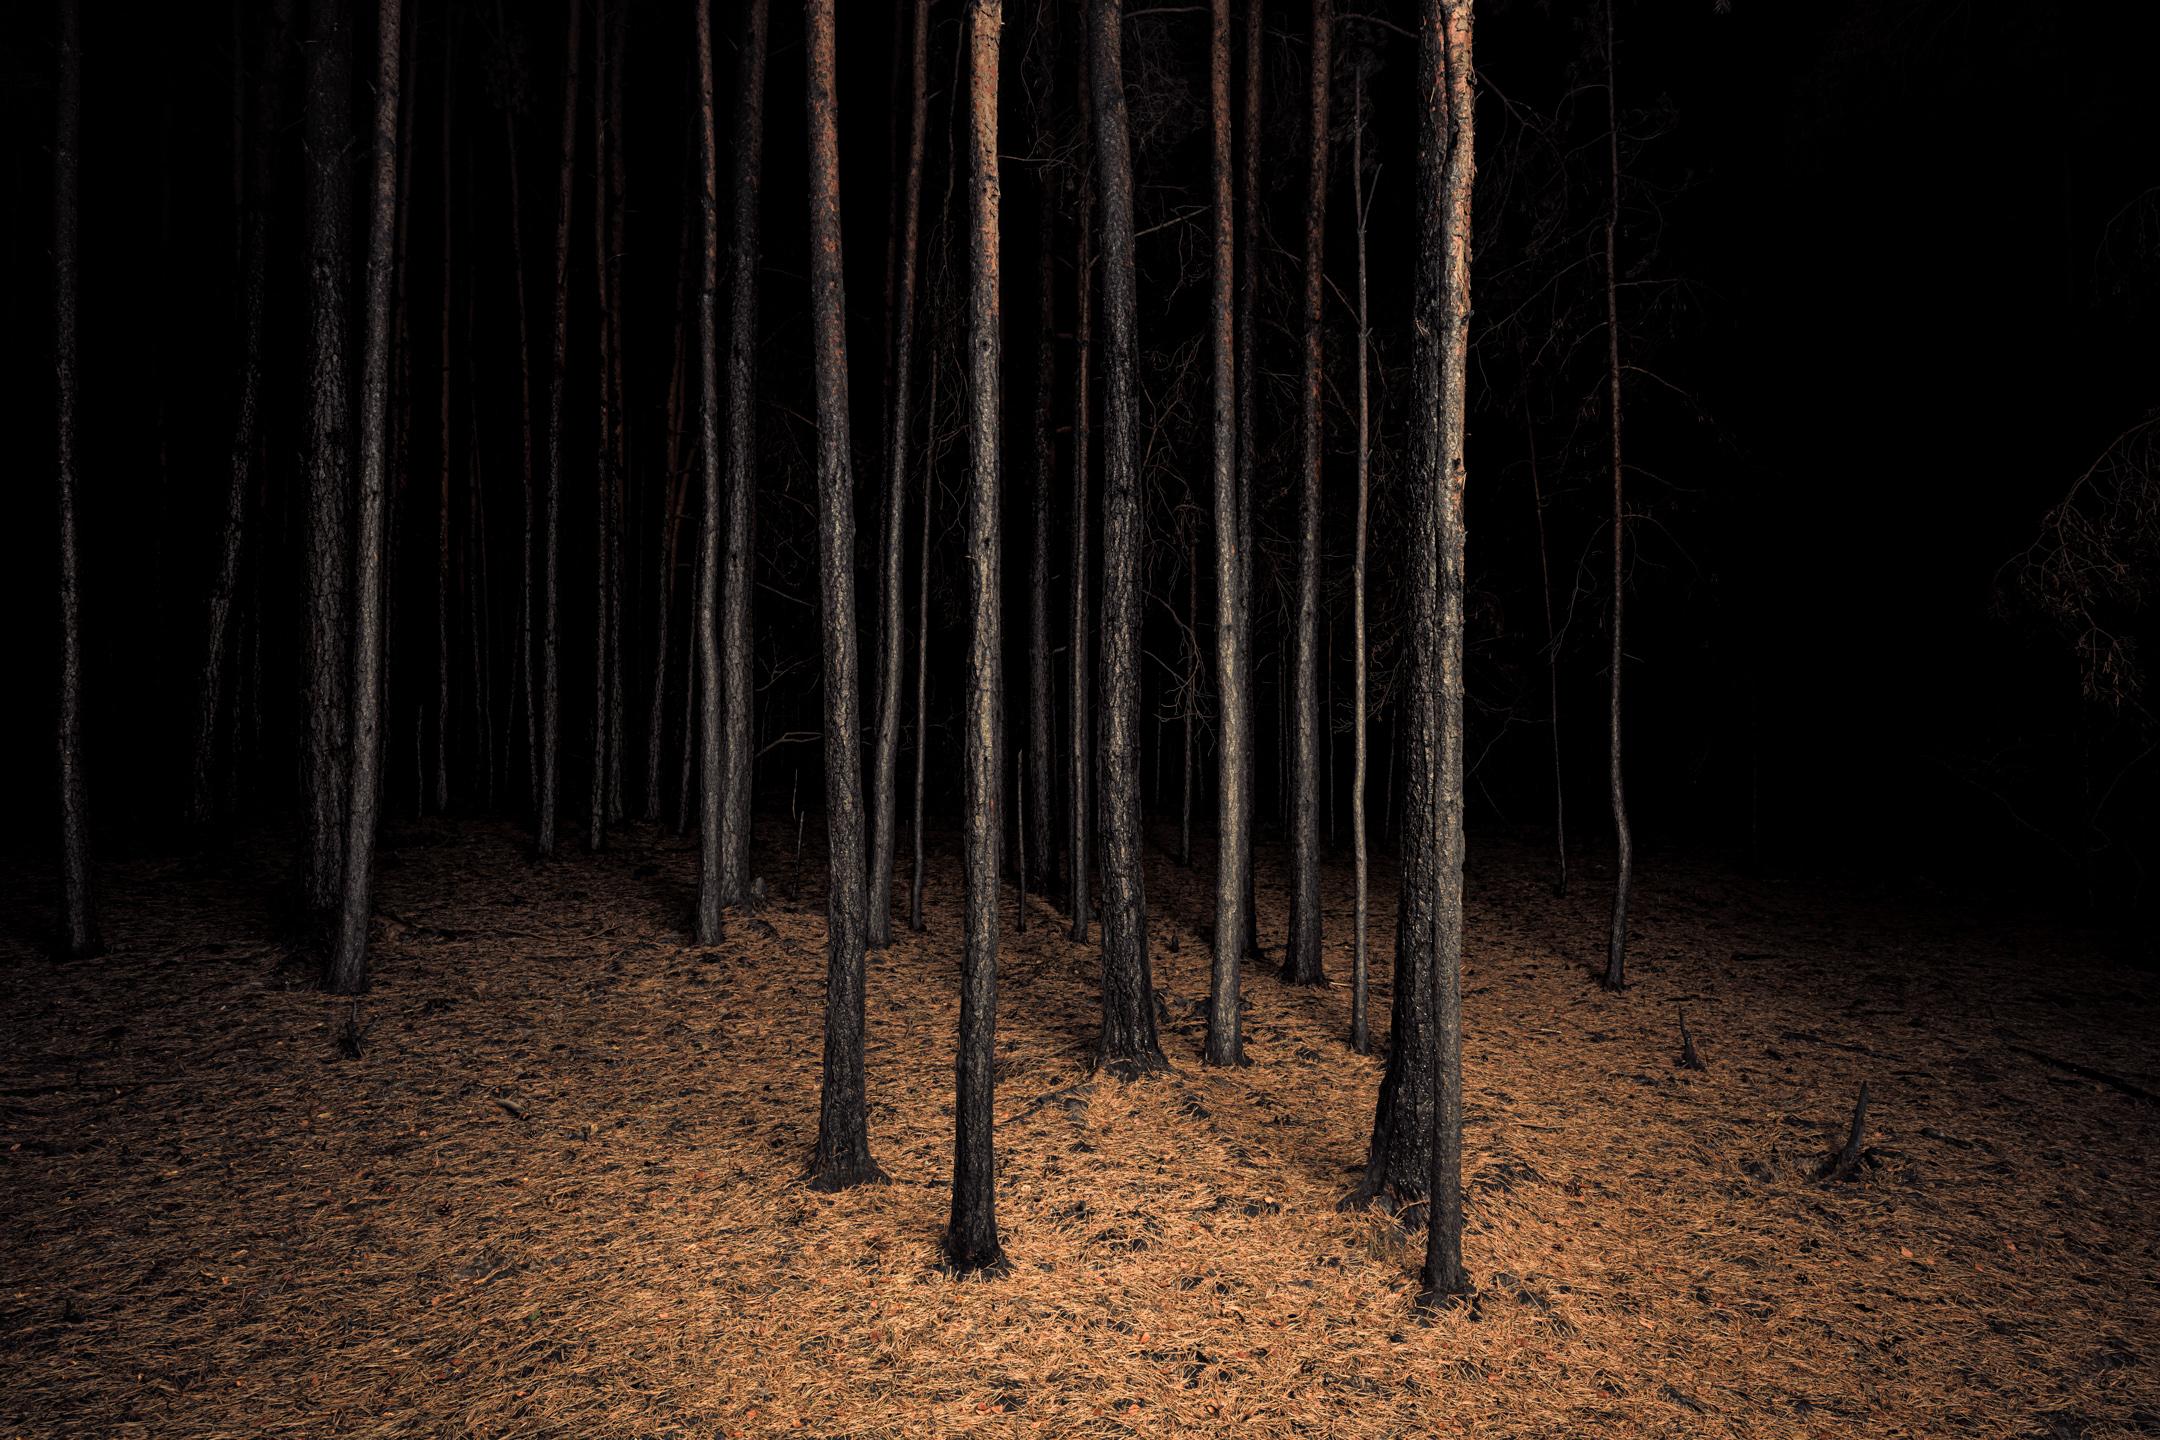 Impression d'œuvres d'art Burnt Place Twilight's Path Forest par Night - Photograph de Jasper Goodall